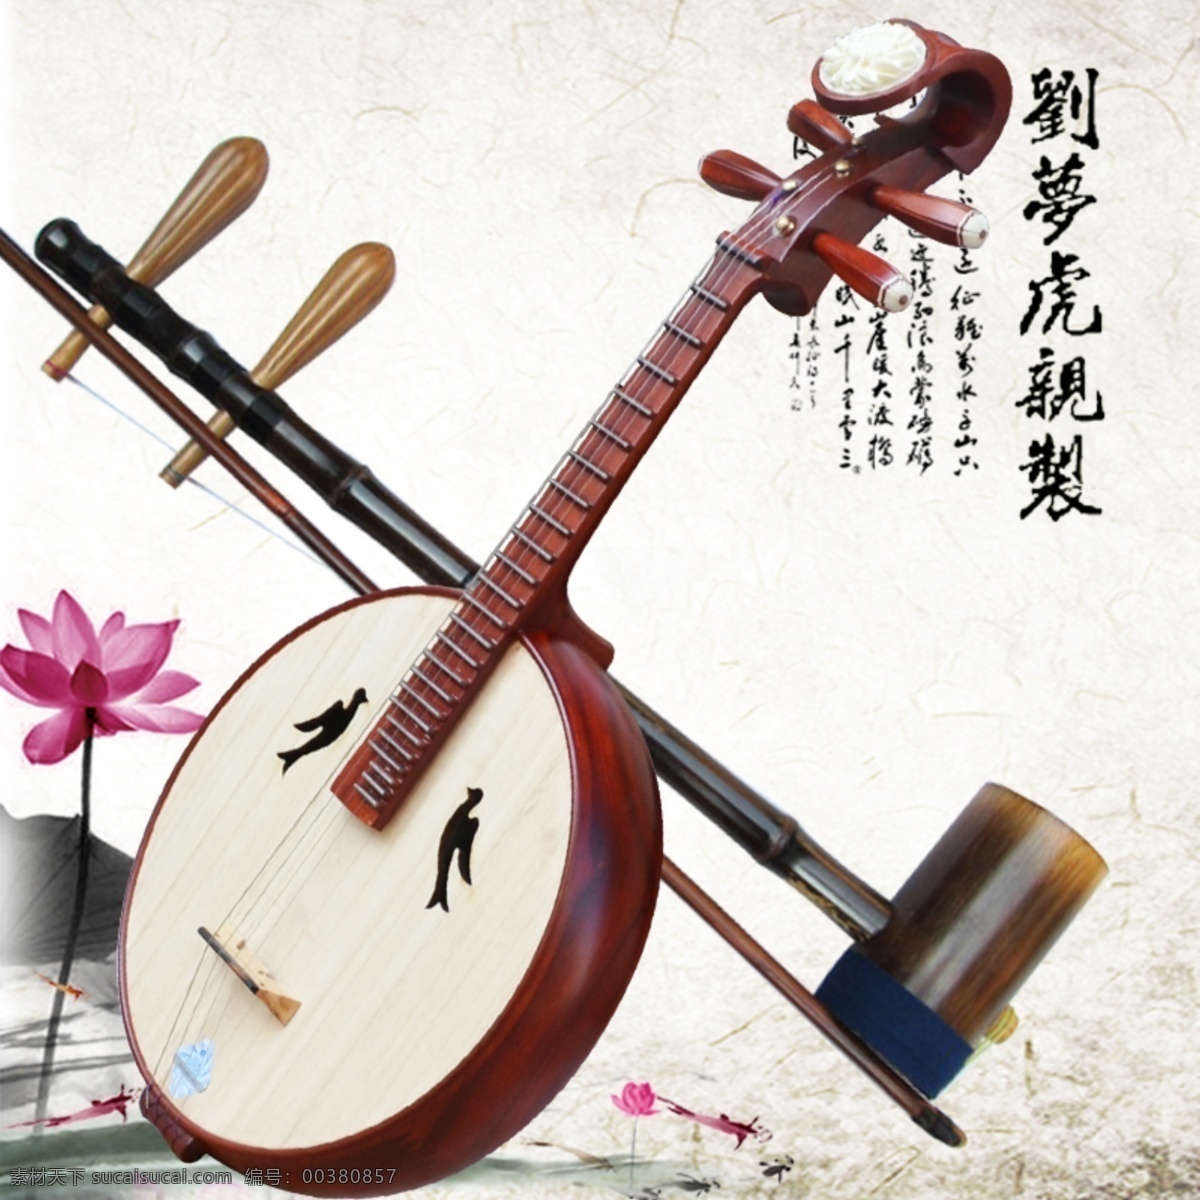 民乐 音乐表演 中国风 二胡 传统音乐 民族乐器